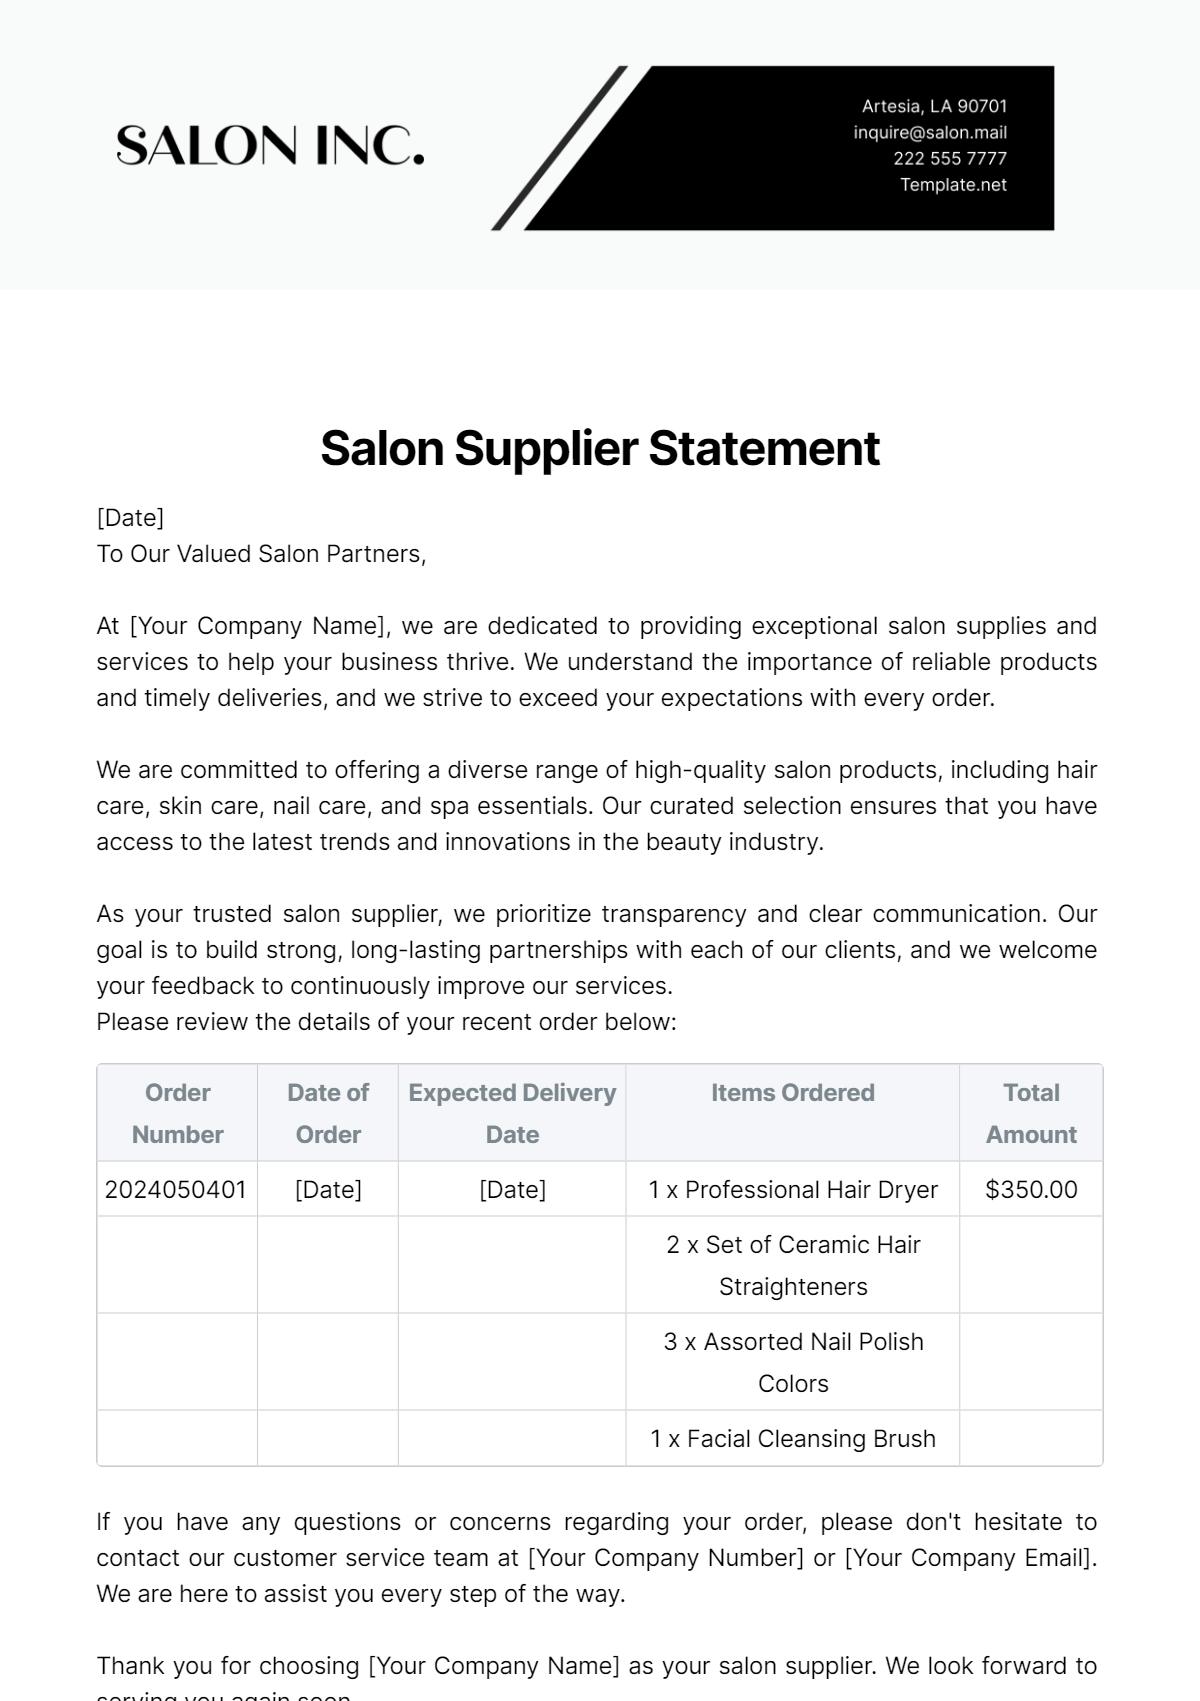 Salon Supplier Statement Template